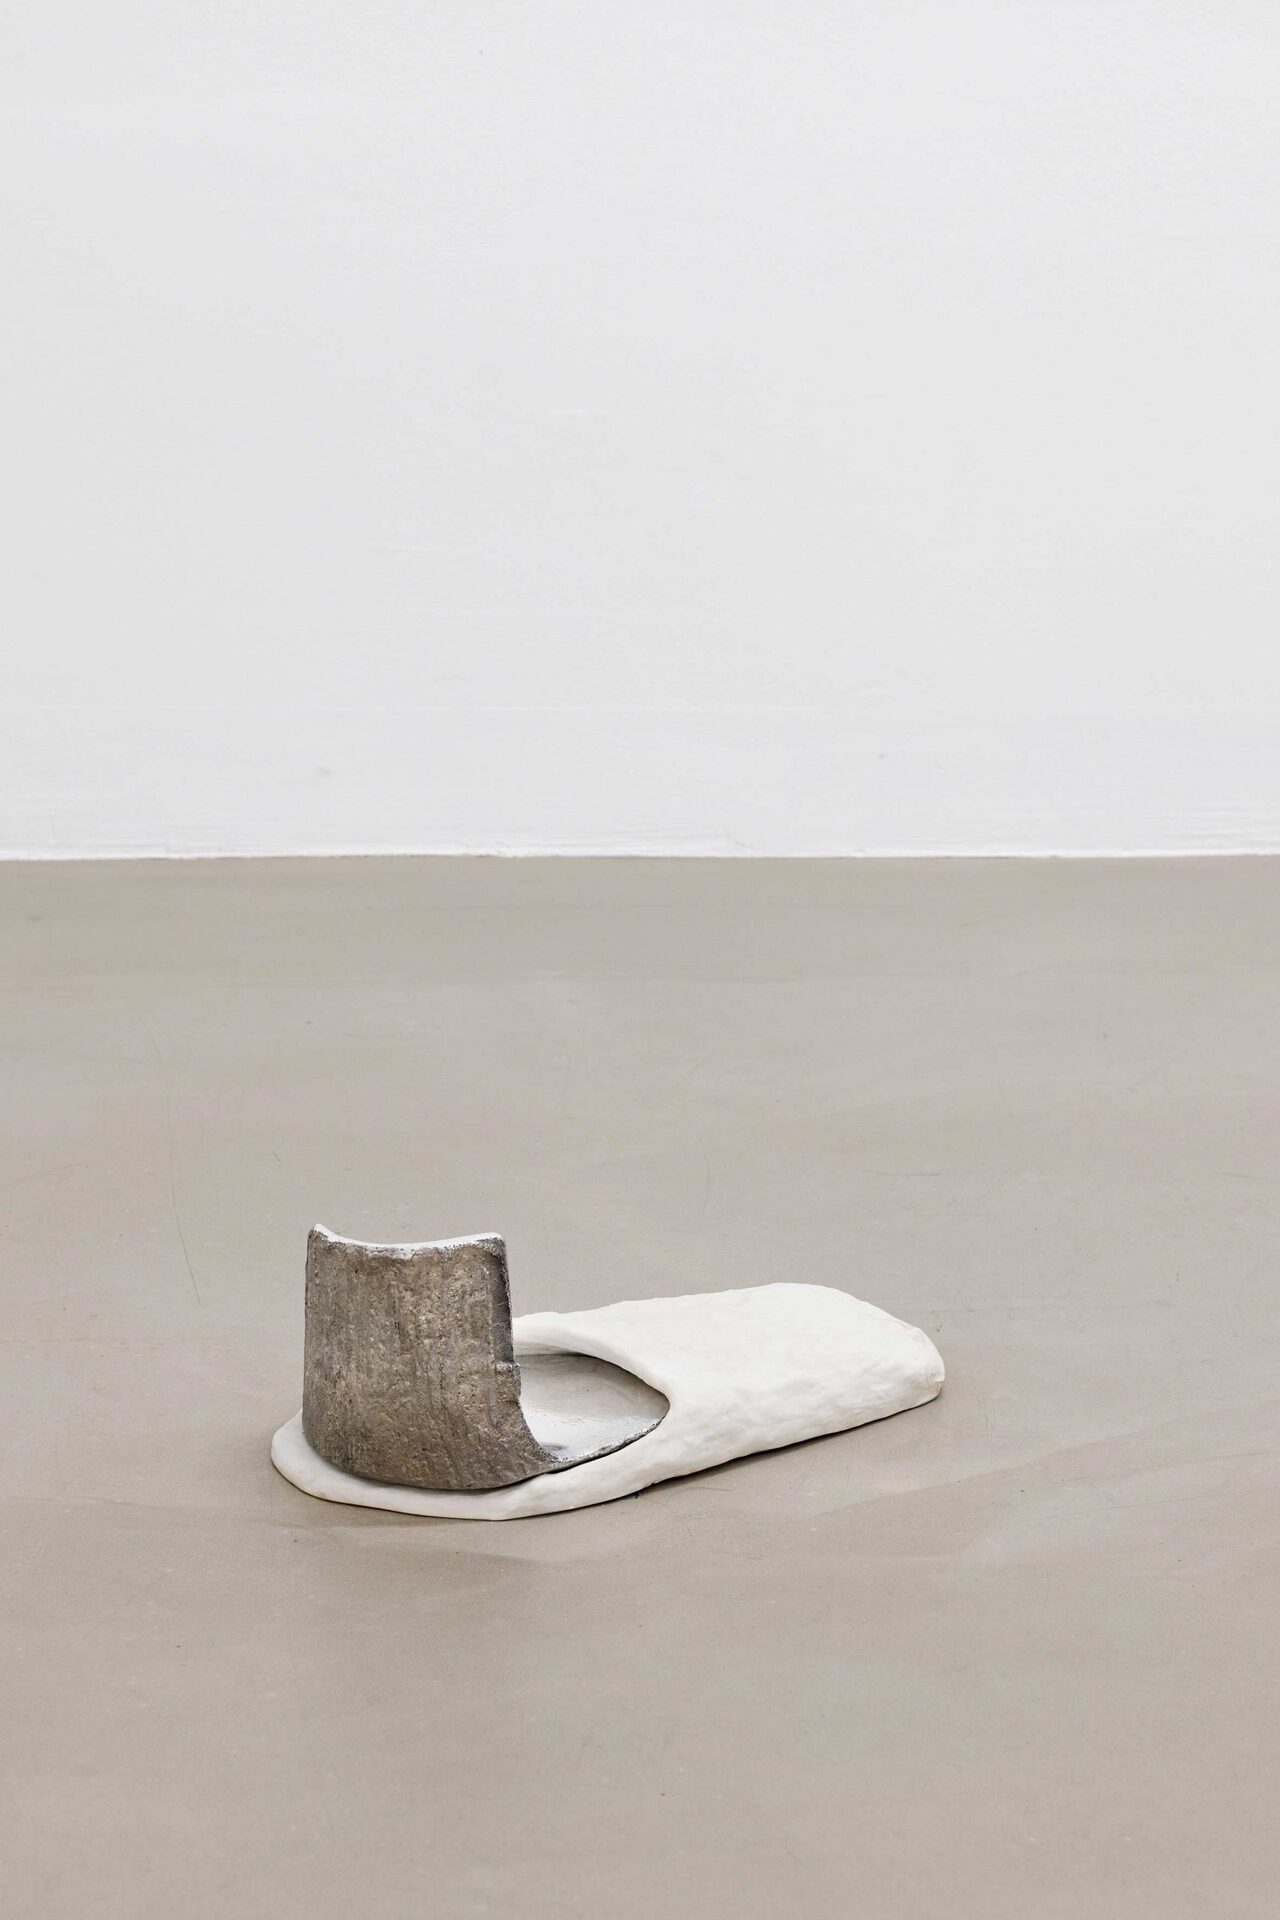 Phanos Kyriacou, standingfoot021, cast polyurethane resin, cast aluminium, 13 x 30 x 14 cm.